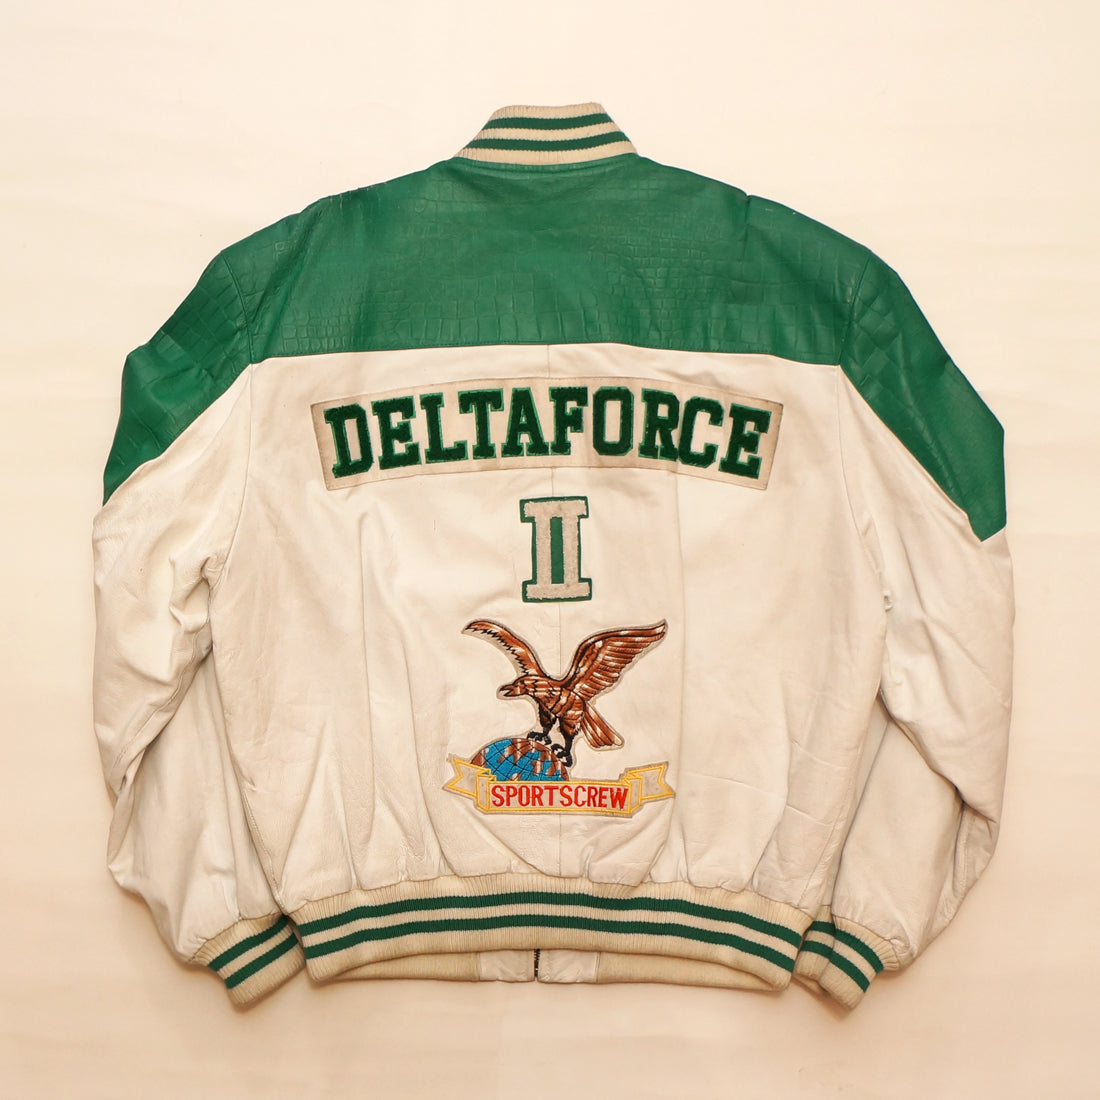 Vintage "DELTA FORCE" Leather Jacket